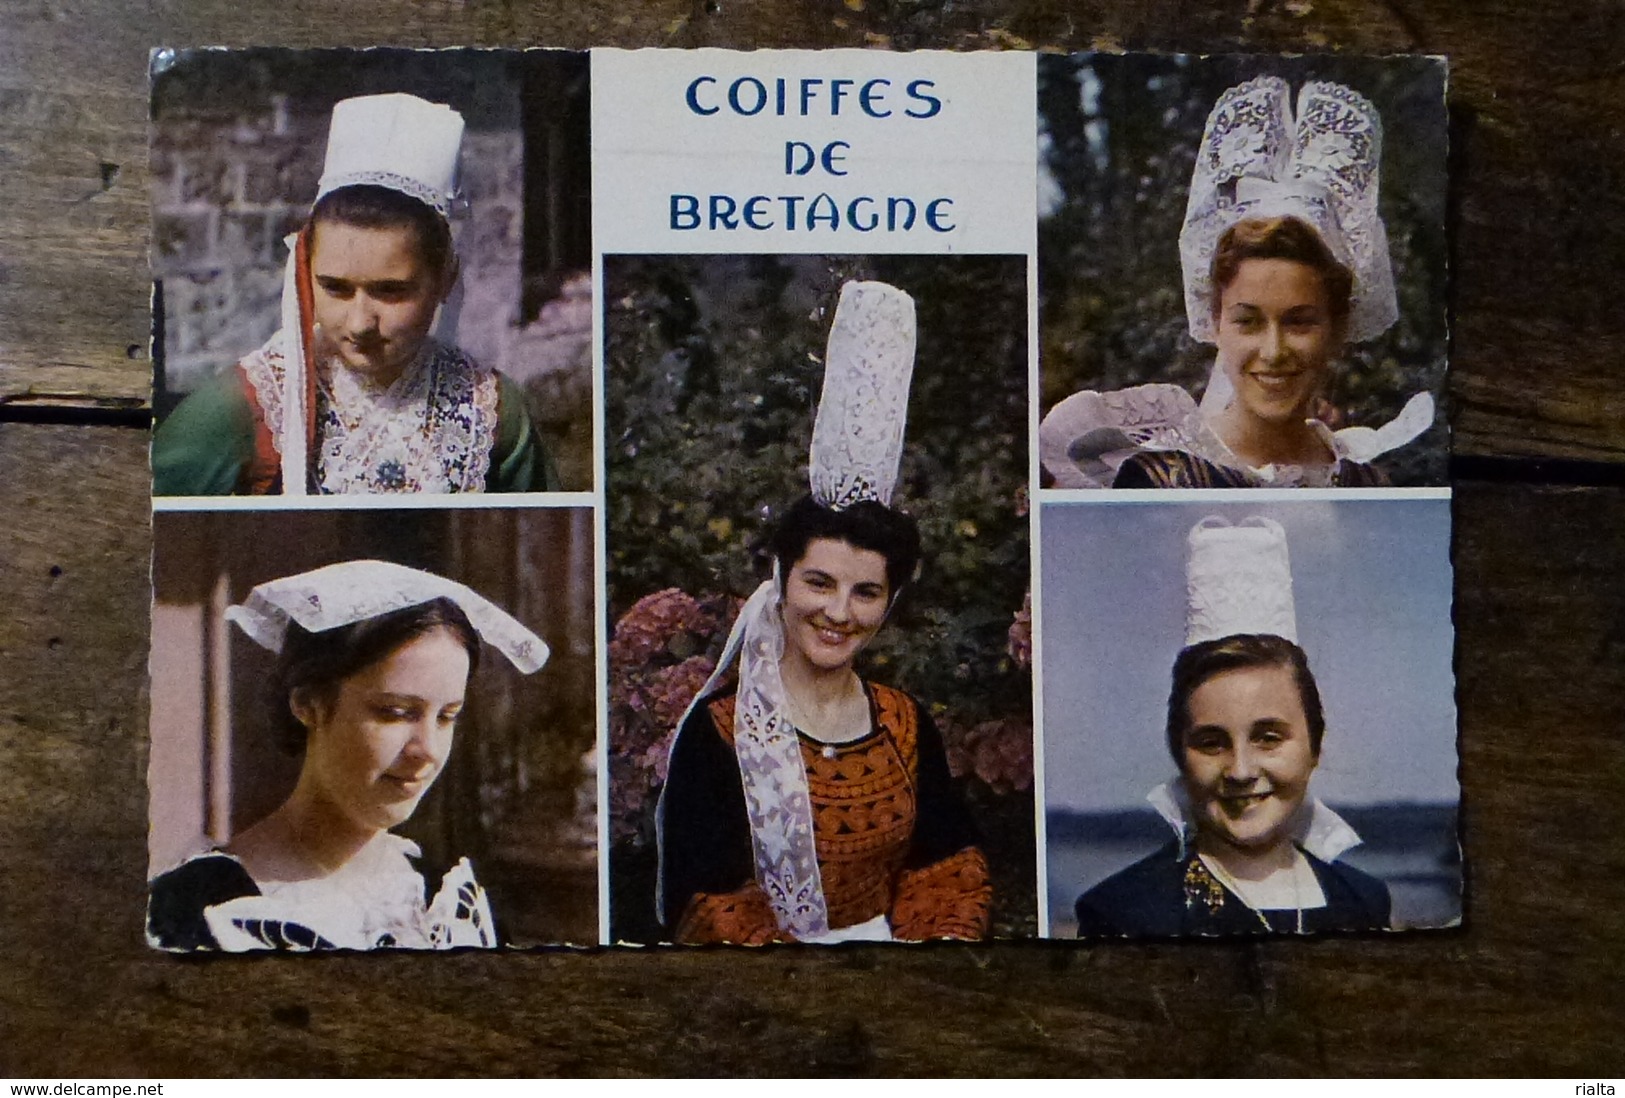 COIFFES DE BRETAGNE, 1964, JEUNES FILLES EN COSTUME DE LORIENT, QUIMPER, FOUESNANT, PONT L'ABBE, PLOUGASTEL - Costumes